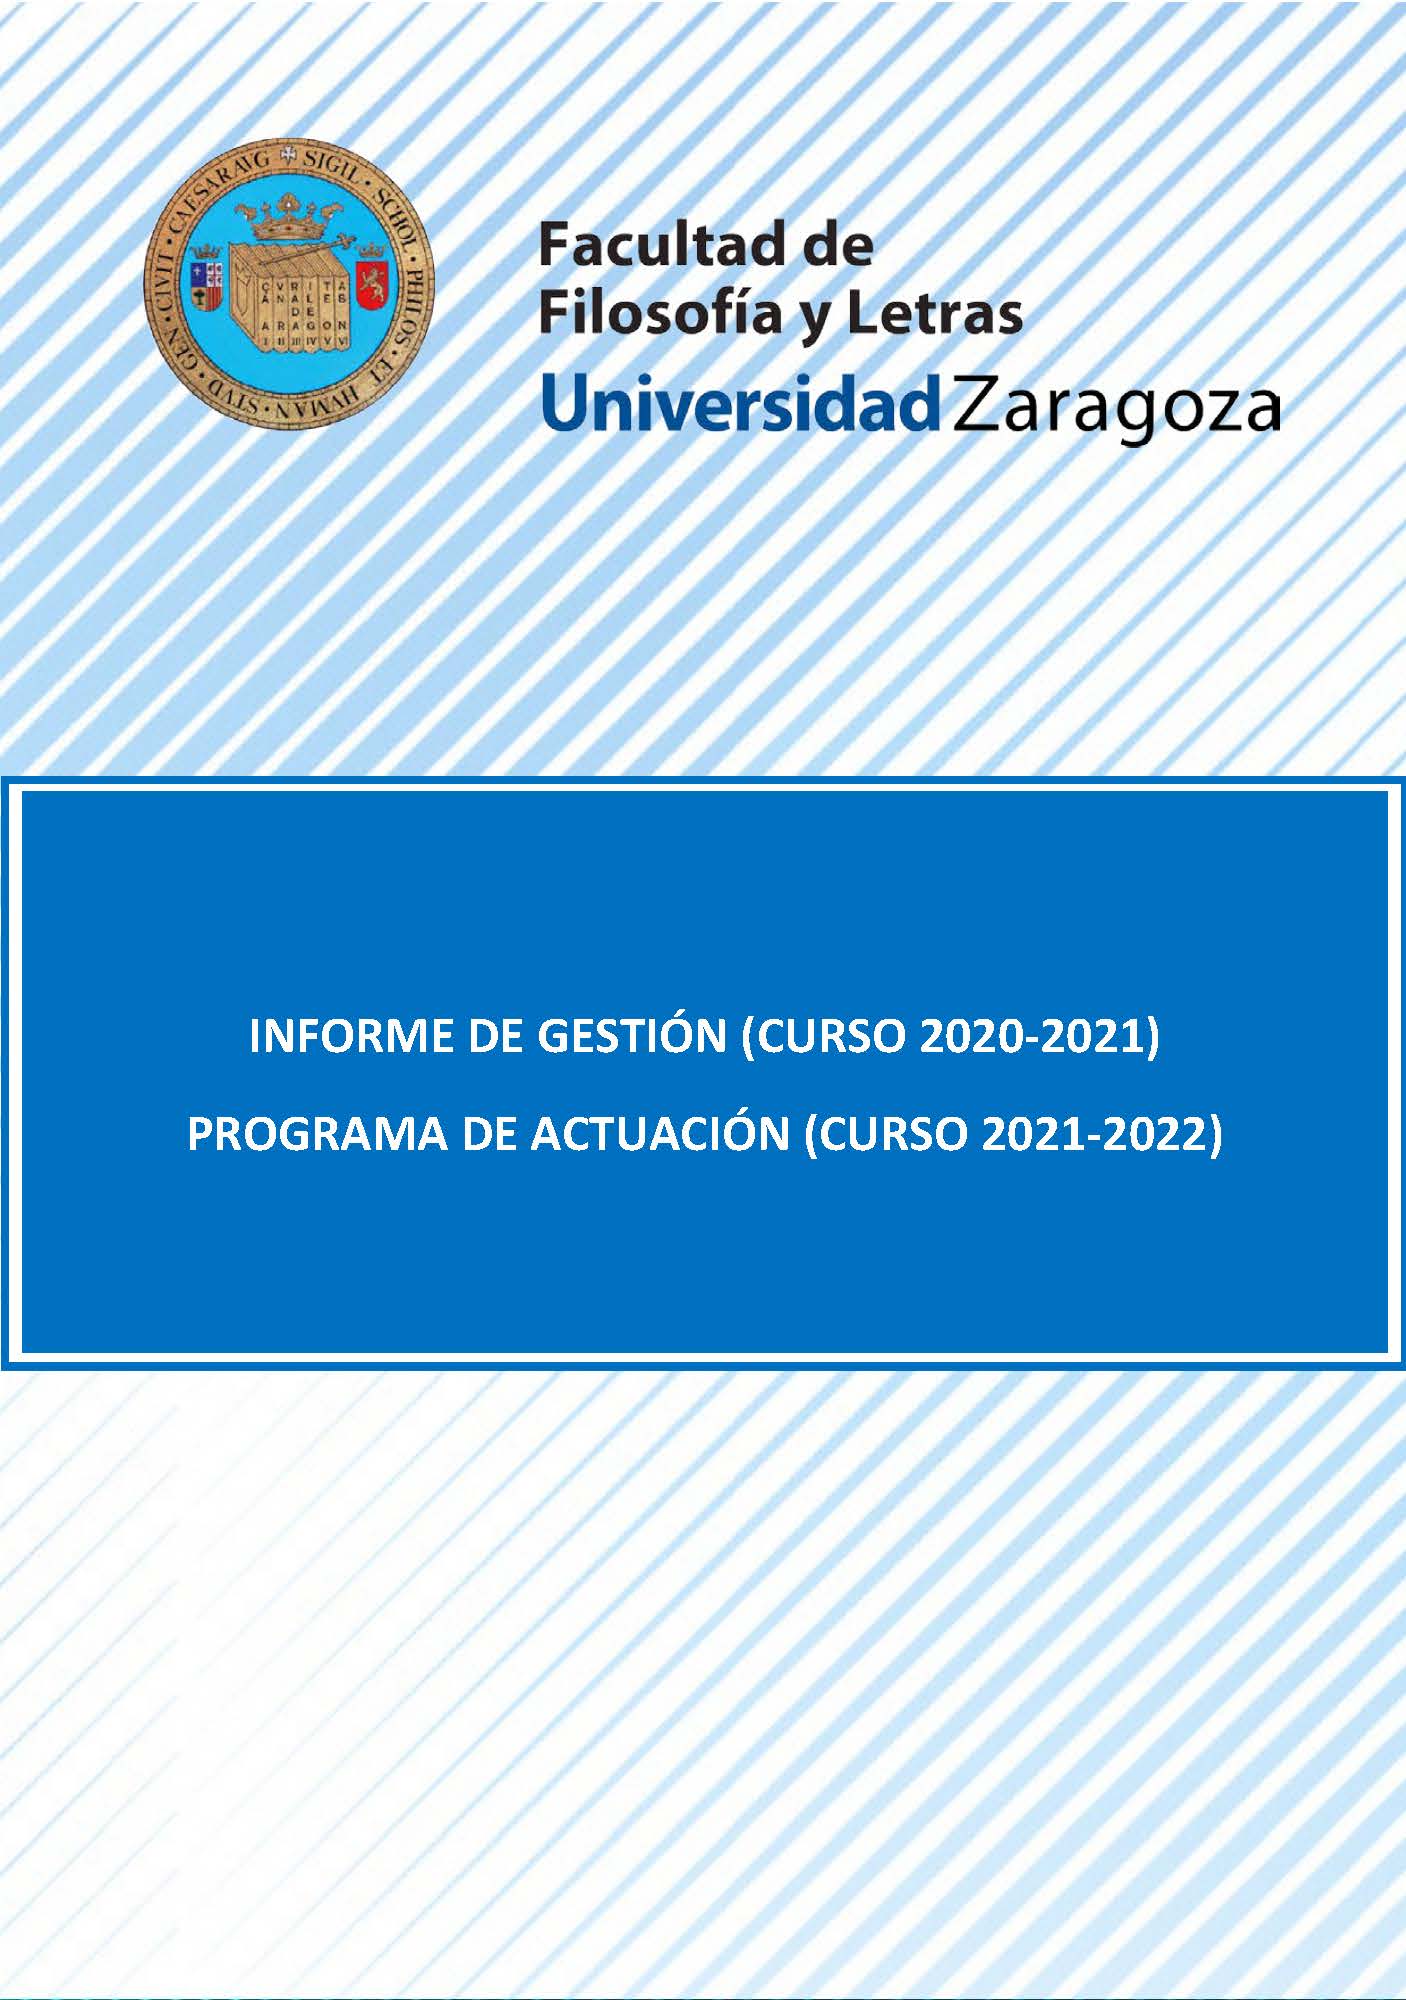 Informe de gestión 2020-2021